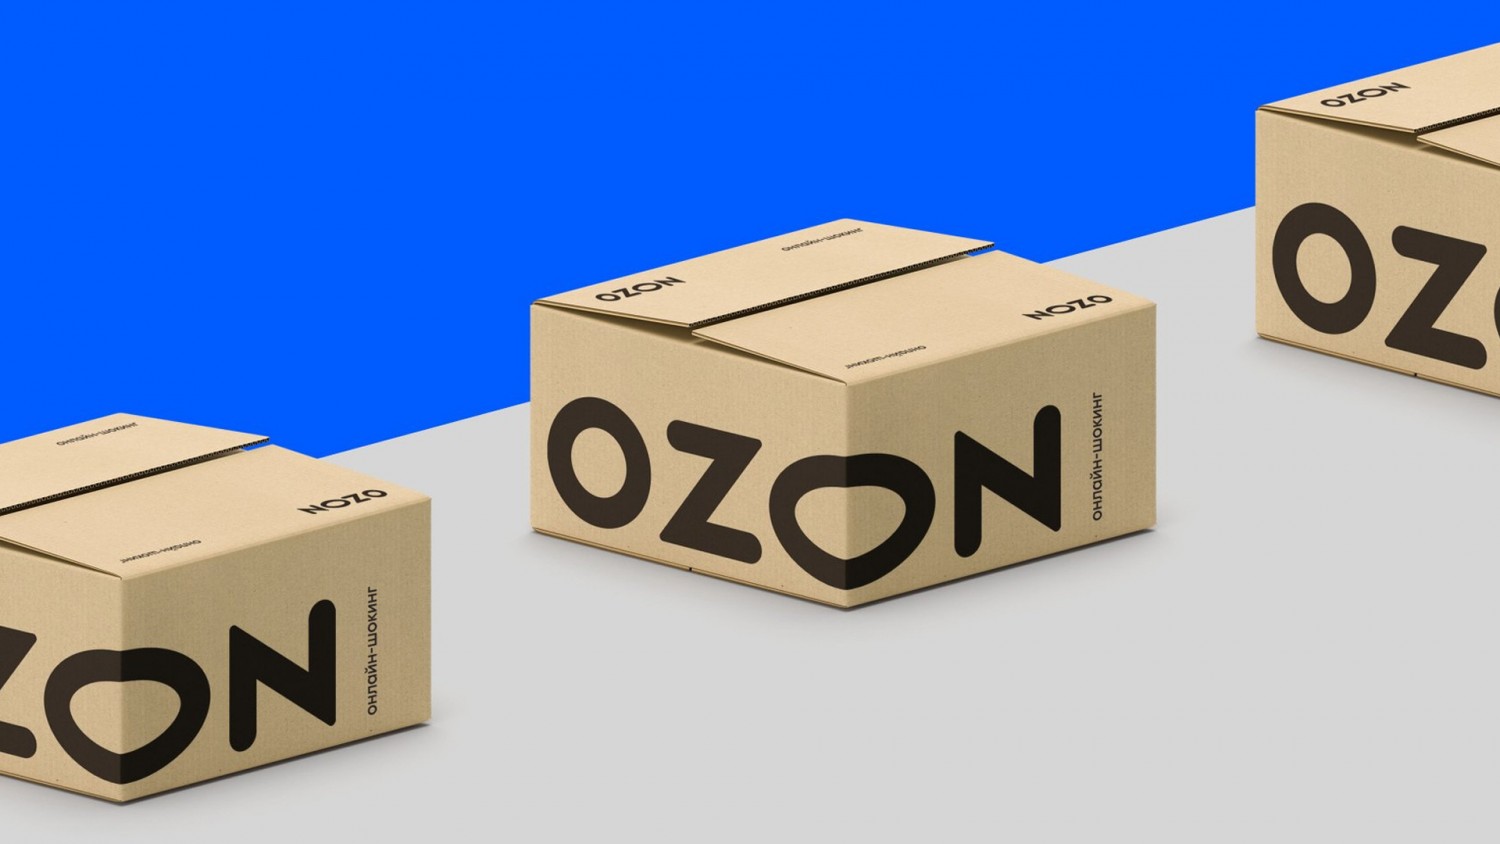 Ozon анонсировал доставку «до двери»: курьер оставит заказ в подъезде или у консьержа